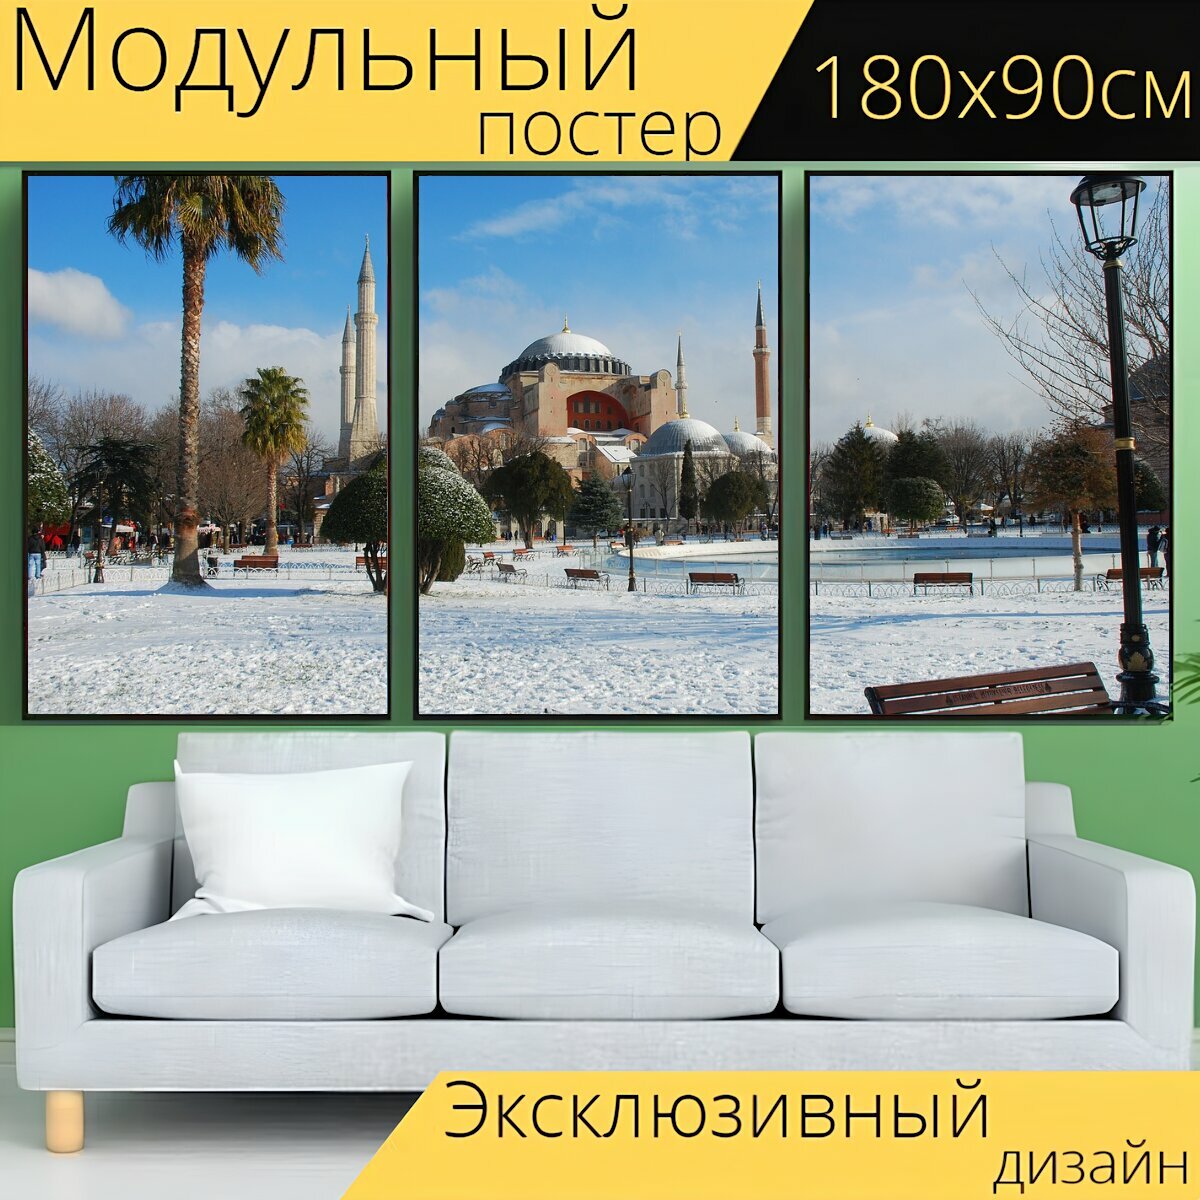 Модульный постер "Собор святой софии, султанахмет, снег" 180 x 90 см. для интерьера